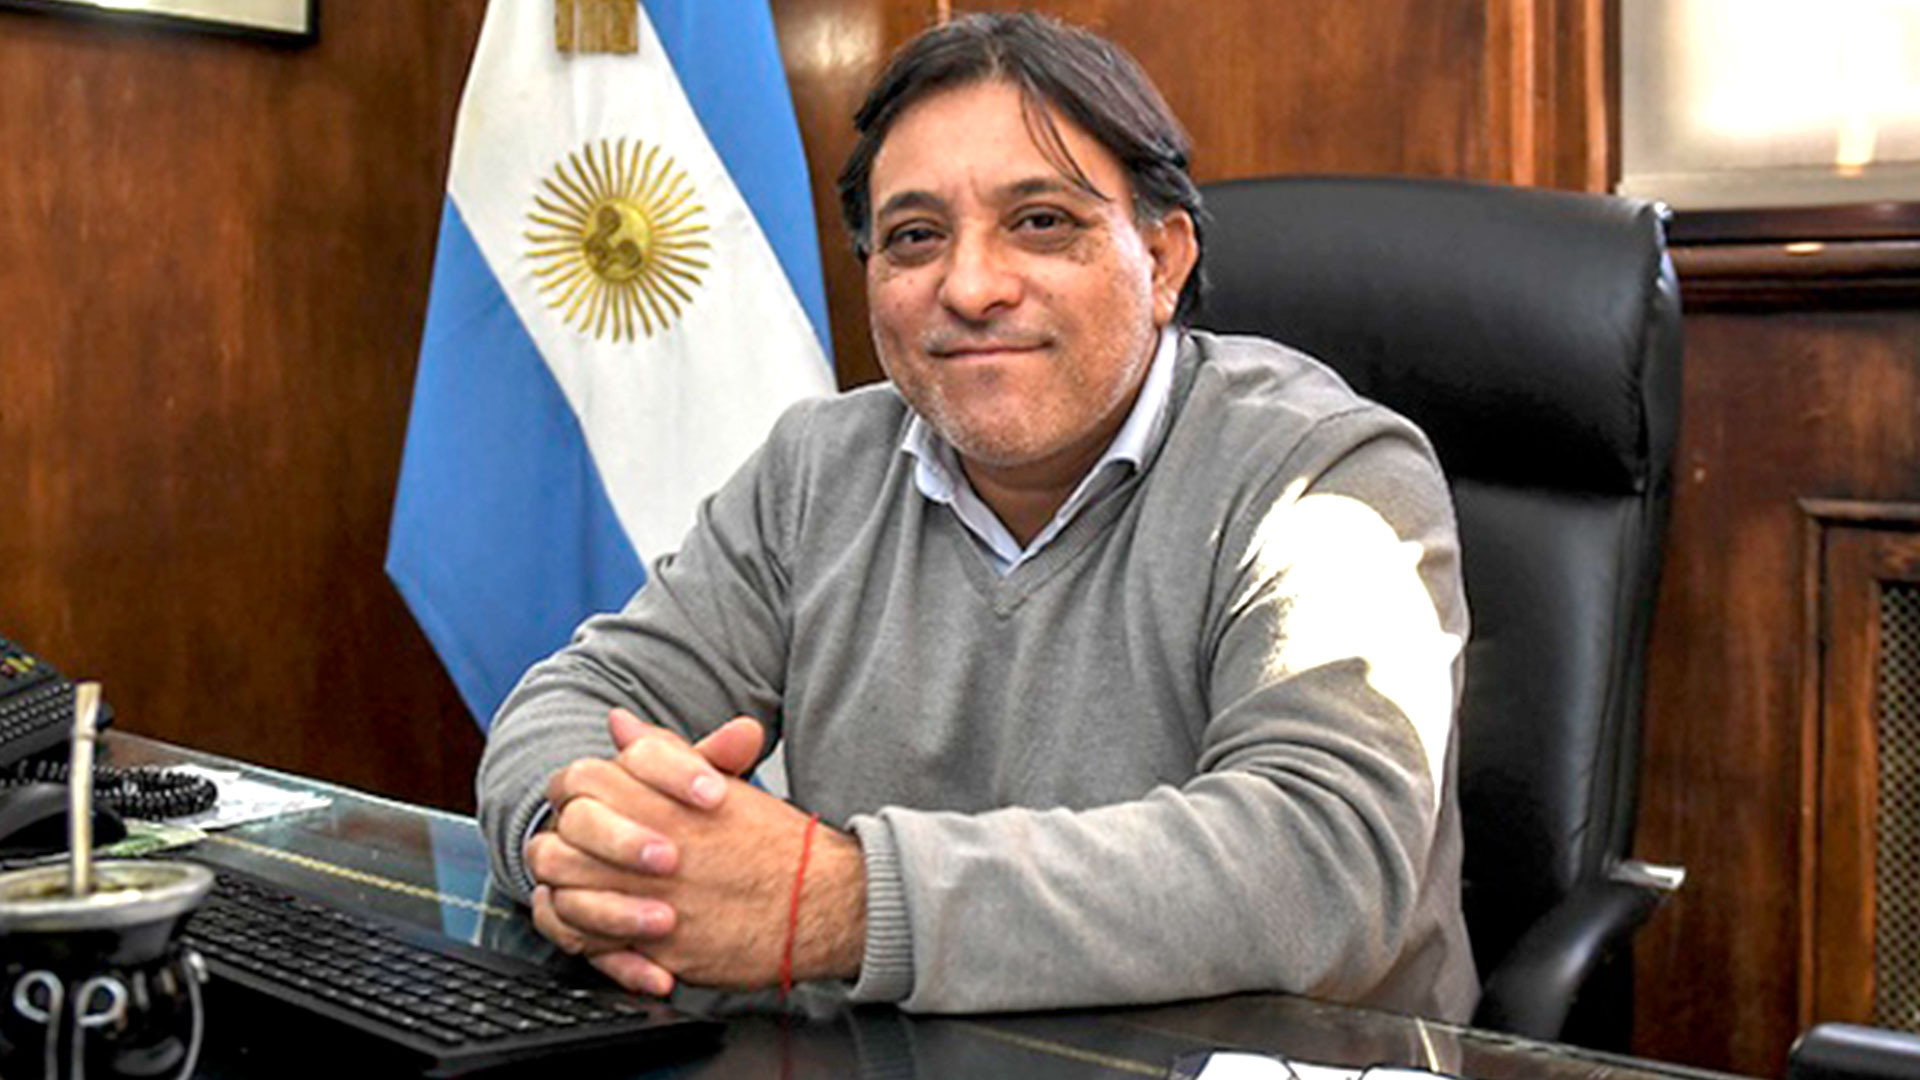 secretario de Agricultura Familiar, Campesina e Indígena Miguel Gómez,  funcionario e integrante del Movimiento Evita